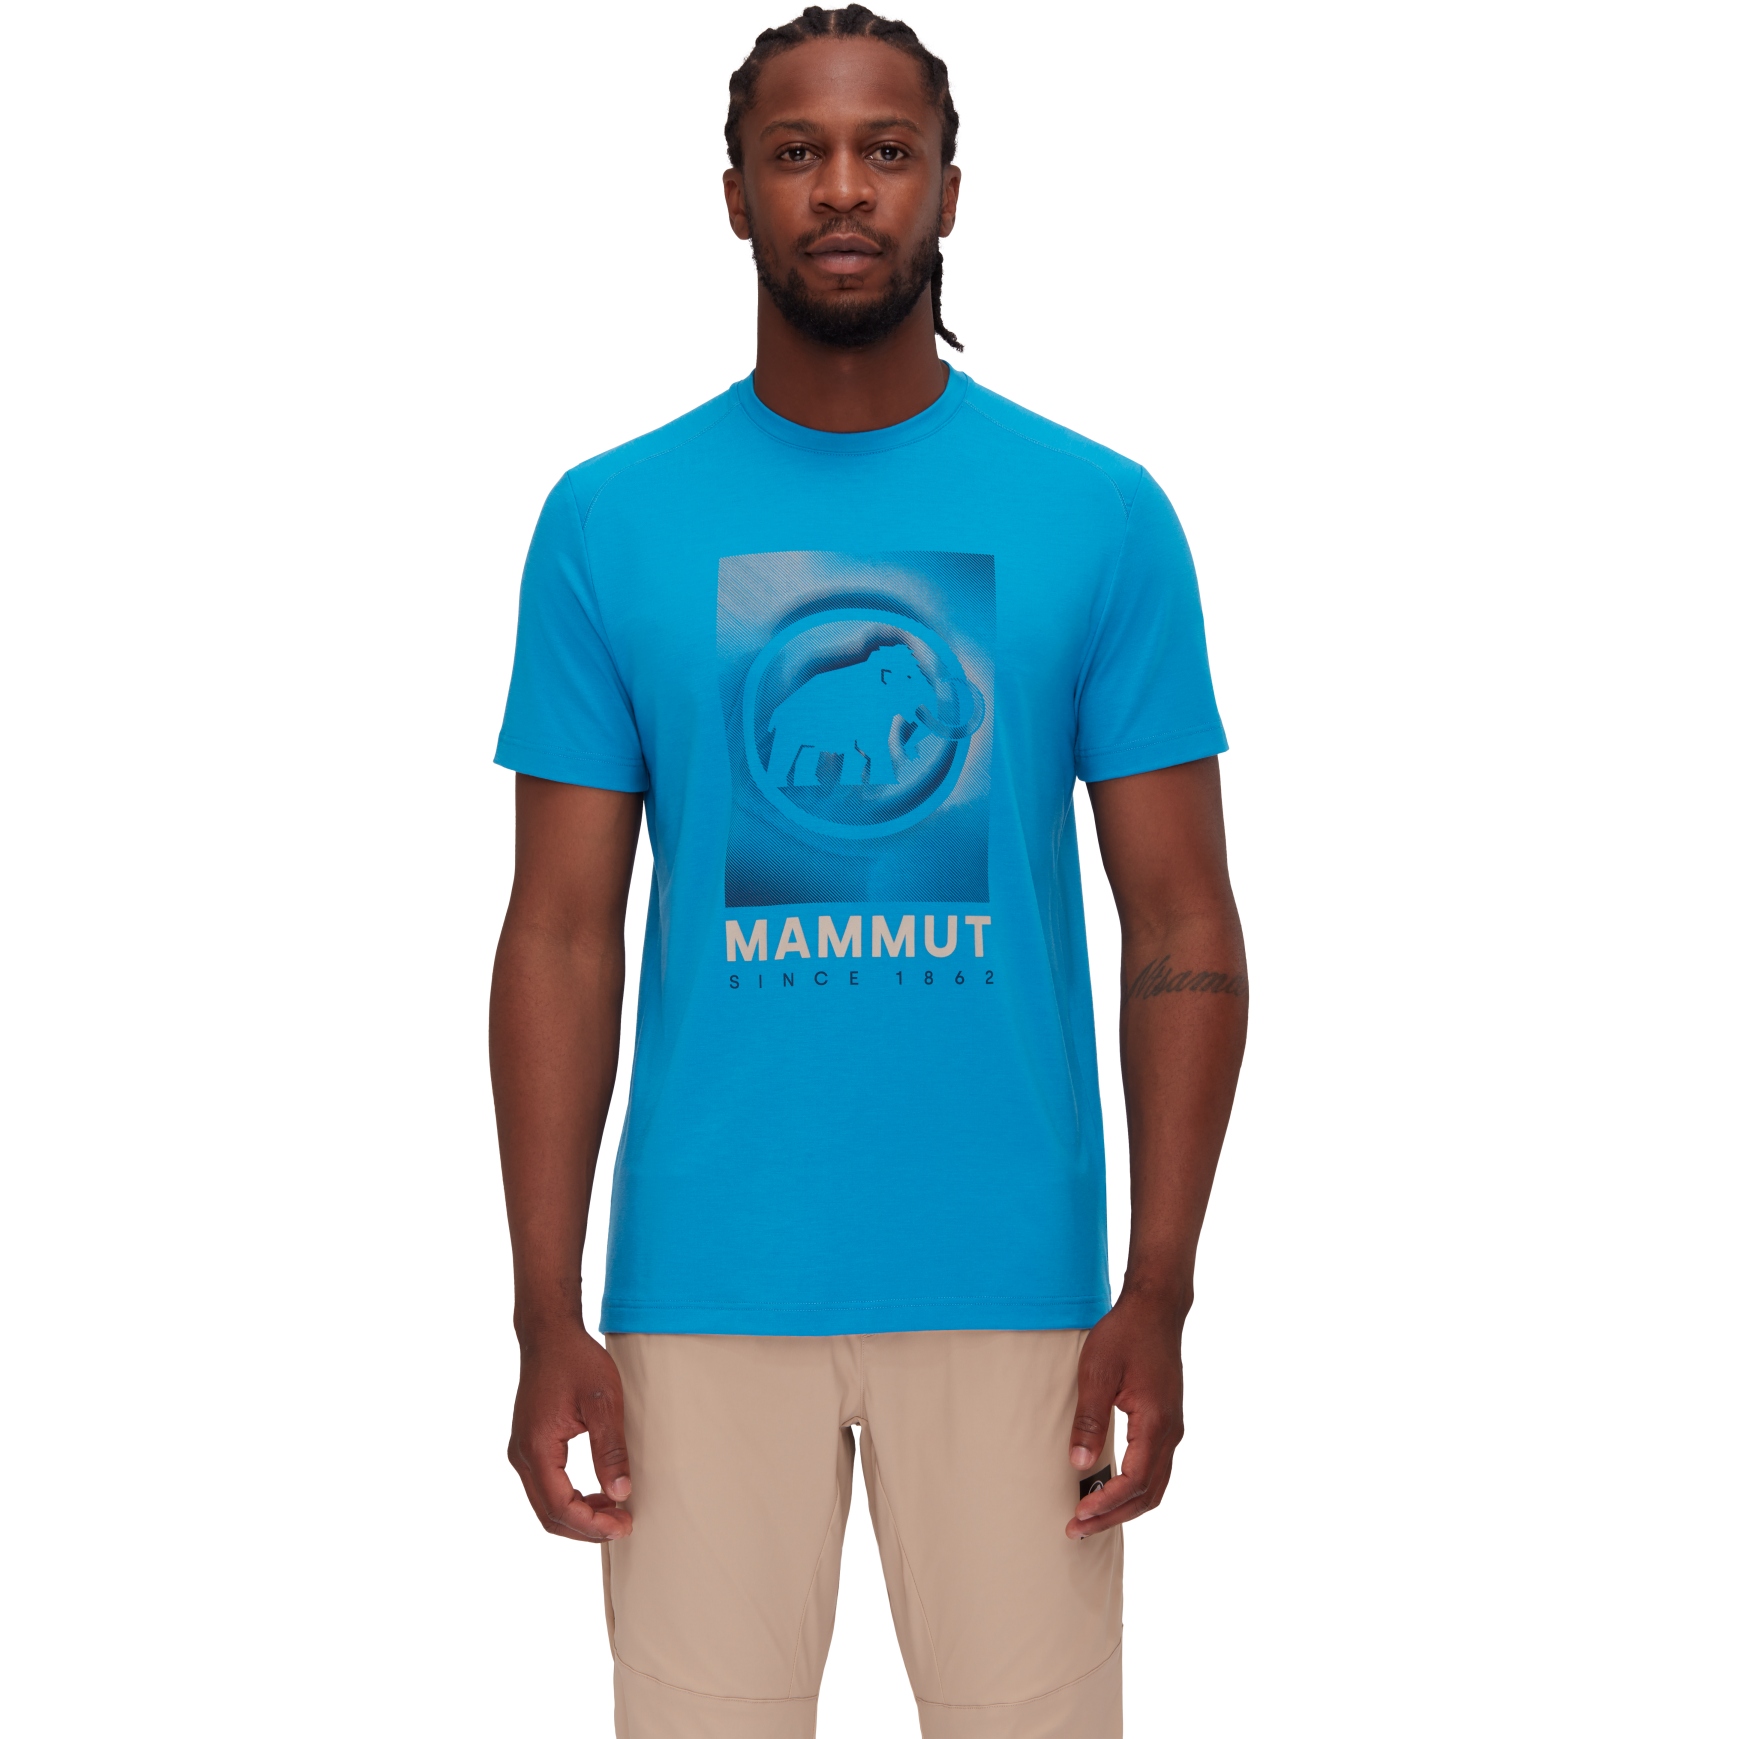 Produktbild von Mammut Trovat Mammut T-Shirt Herren - glacier blue